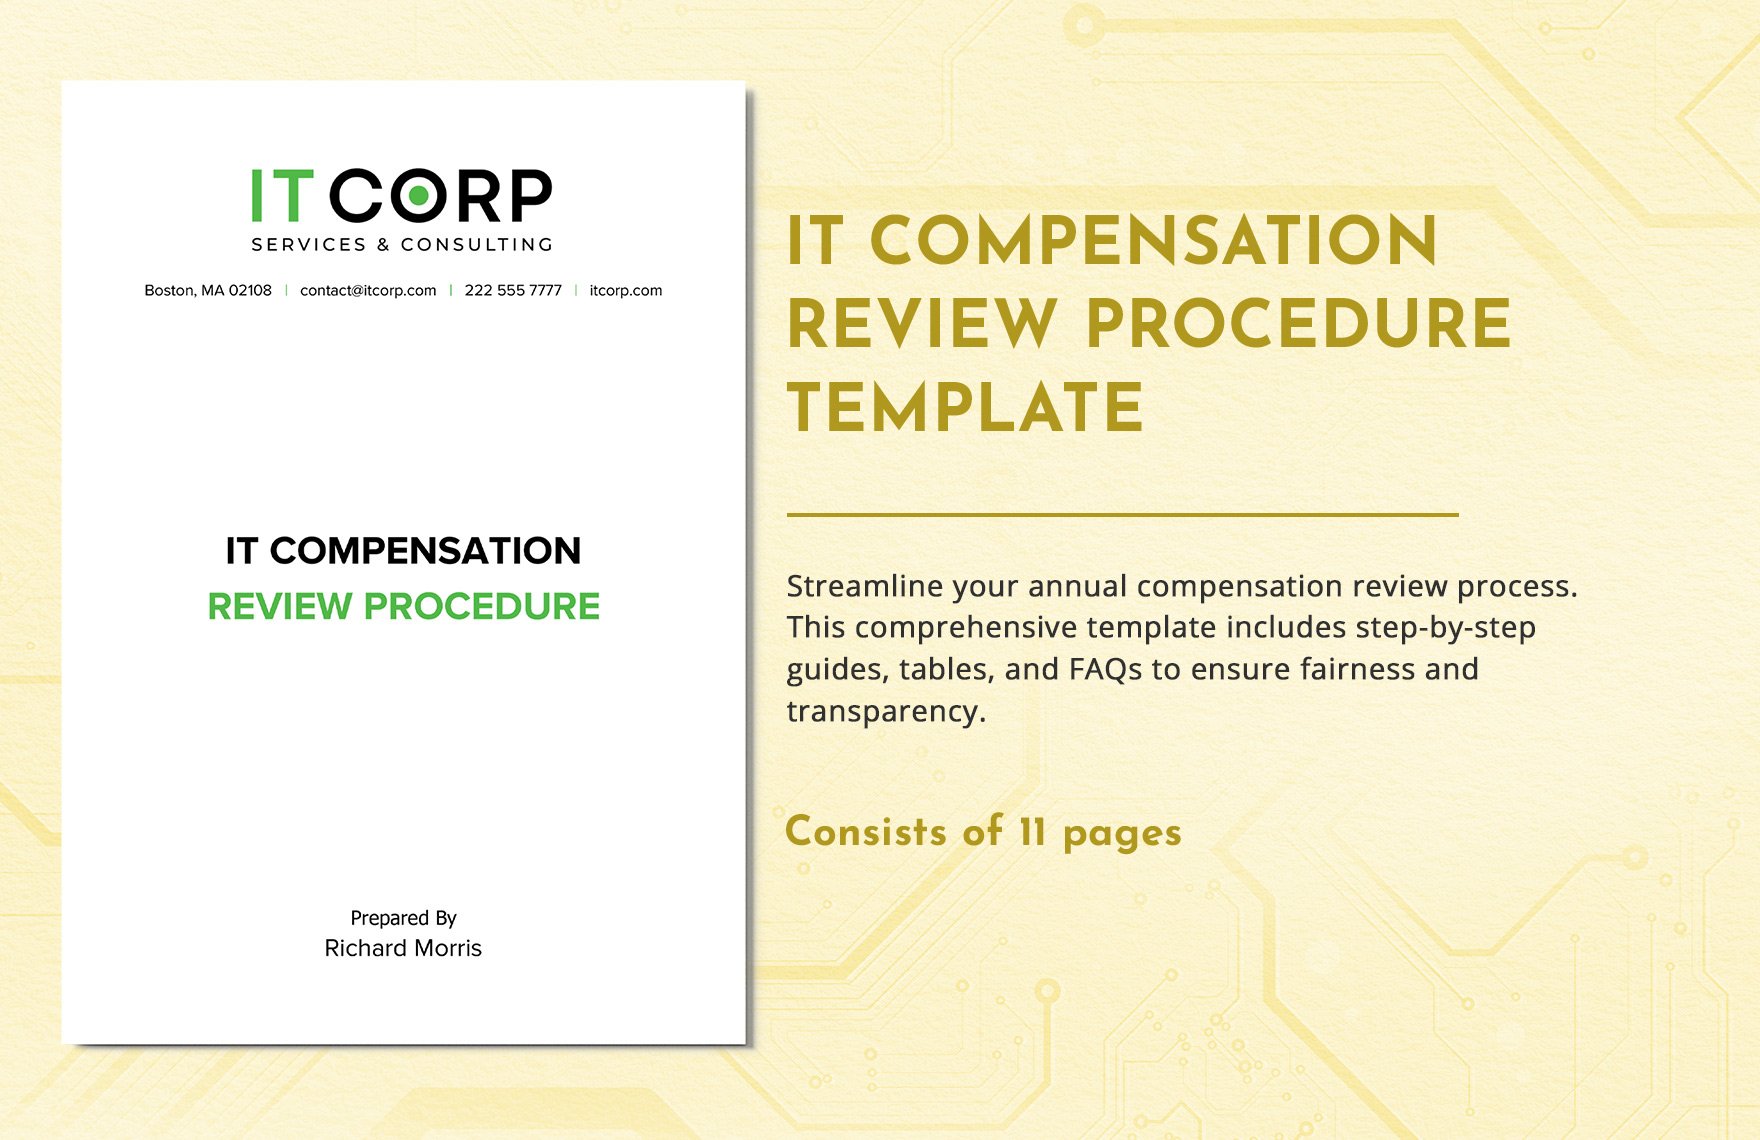 IT Compensation Review Procedure Template